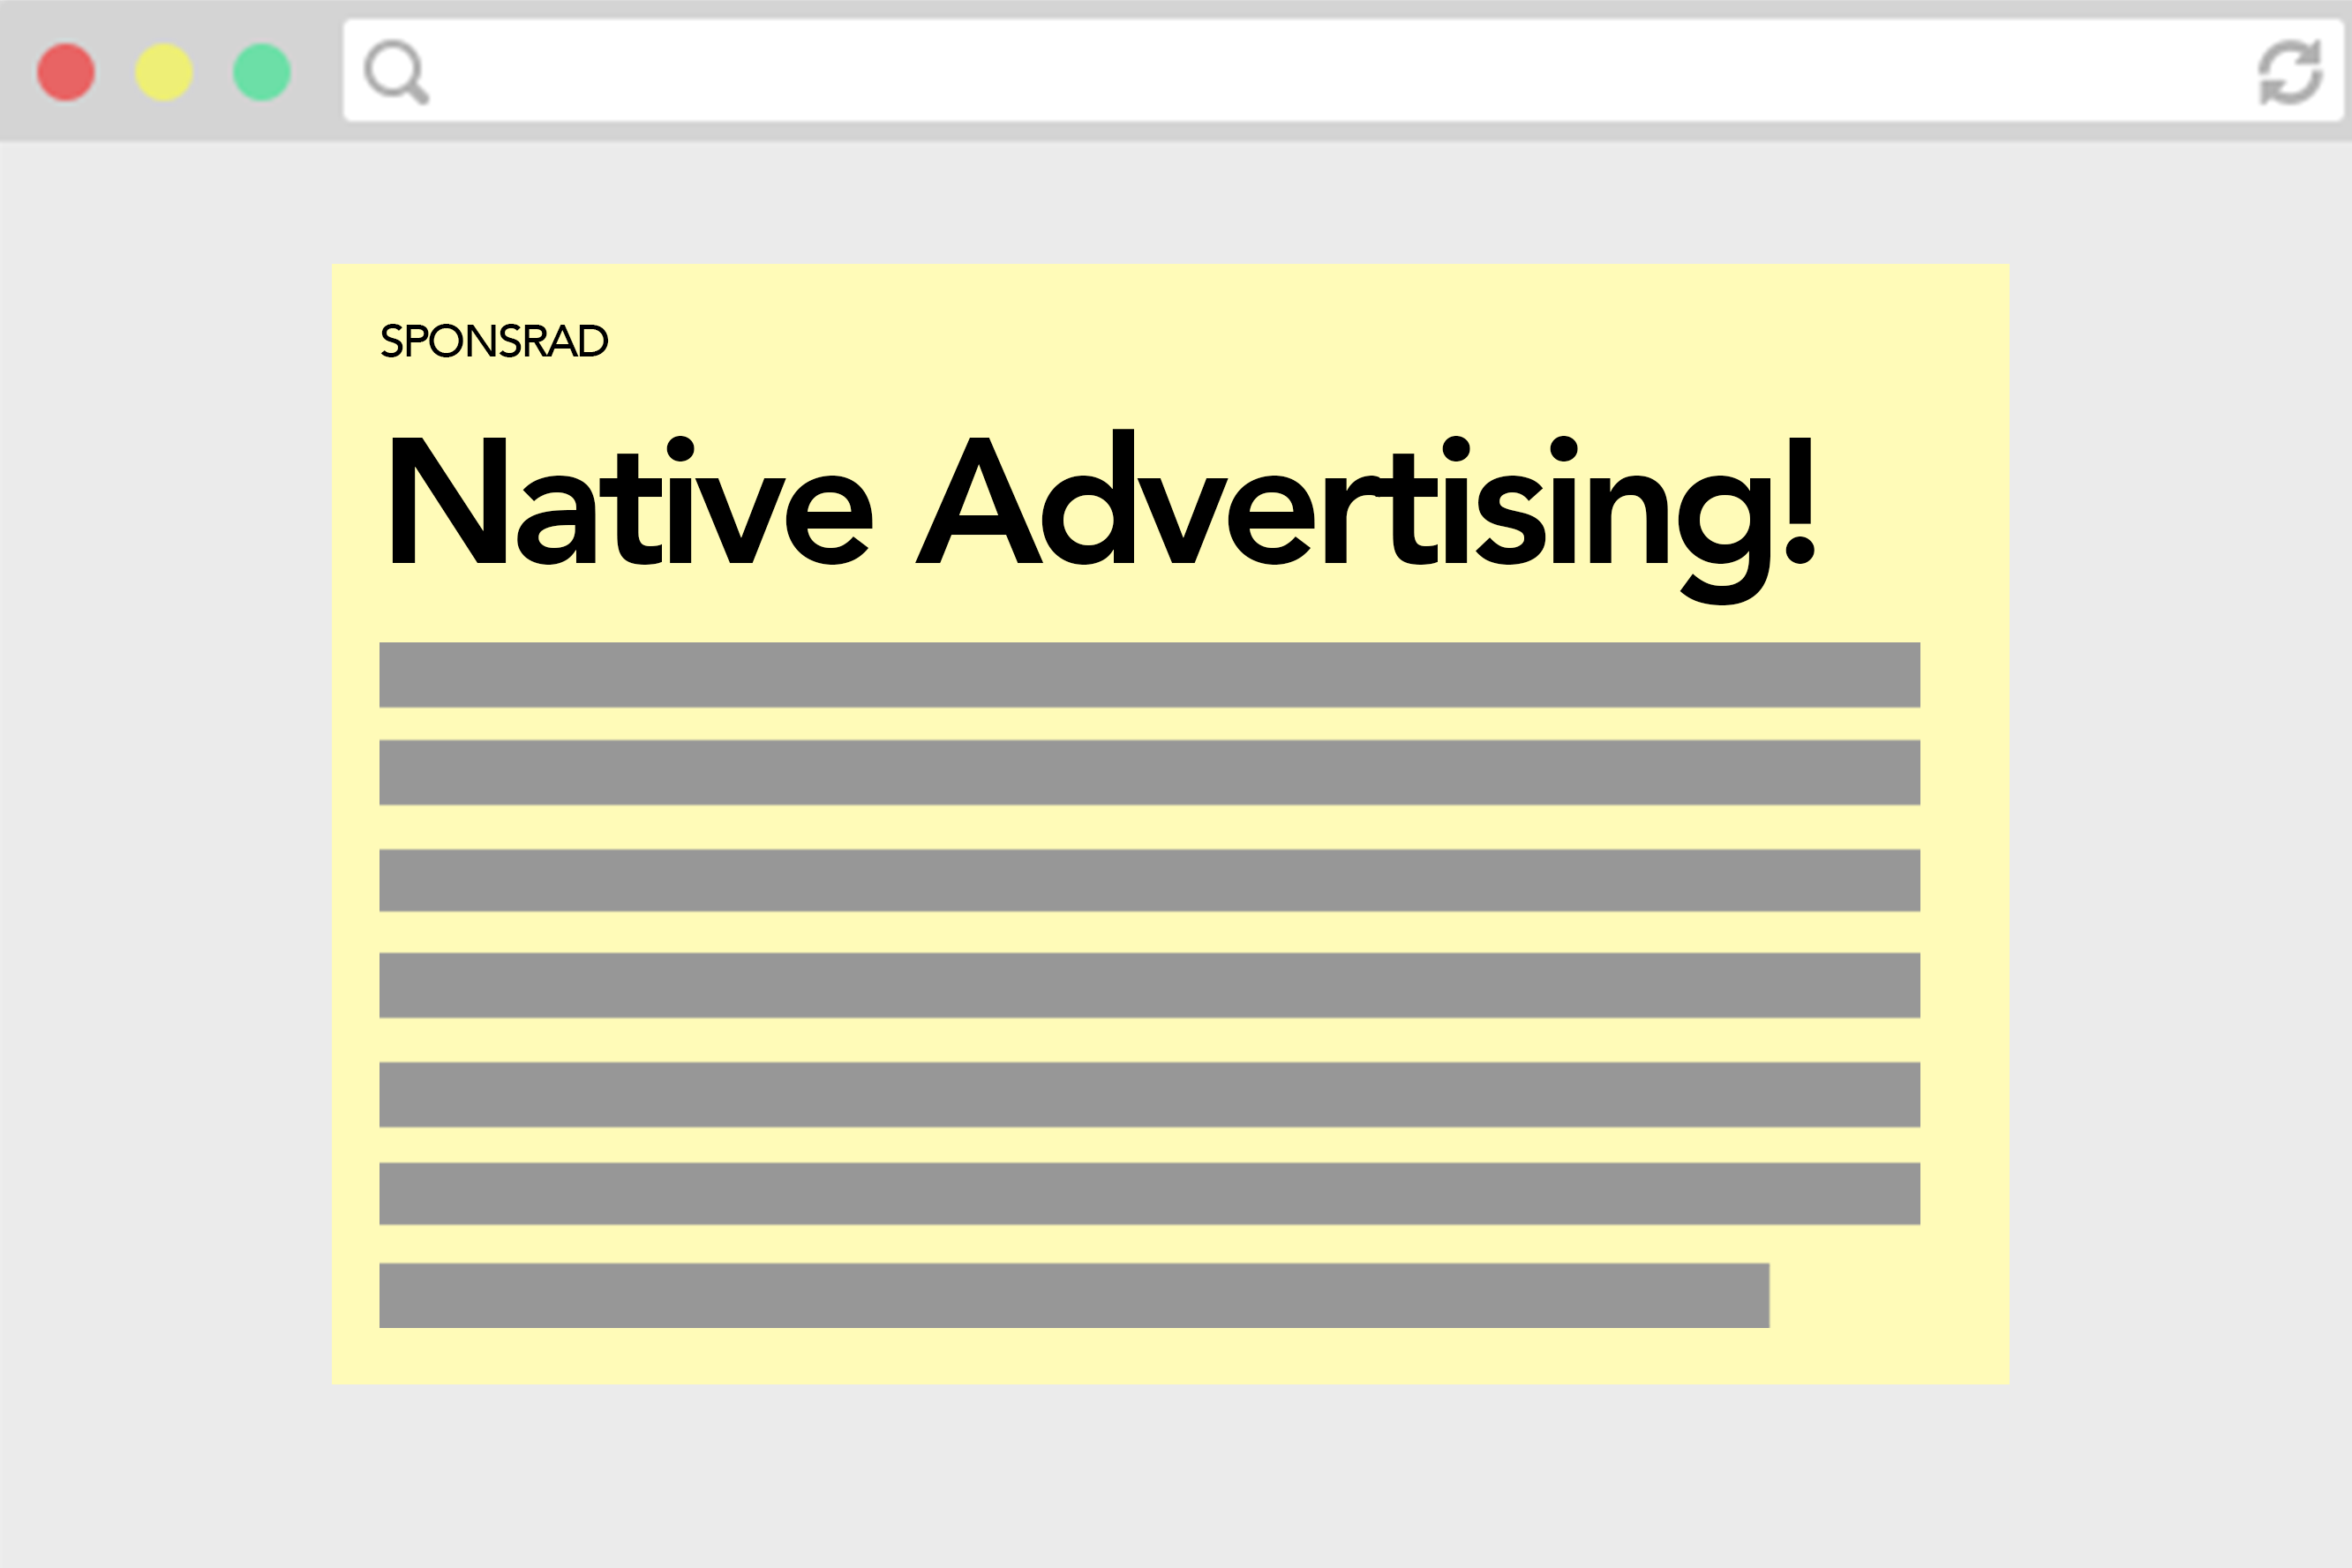 Börja jobba med Native Advertising!